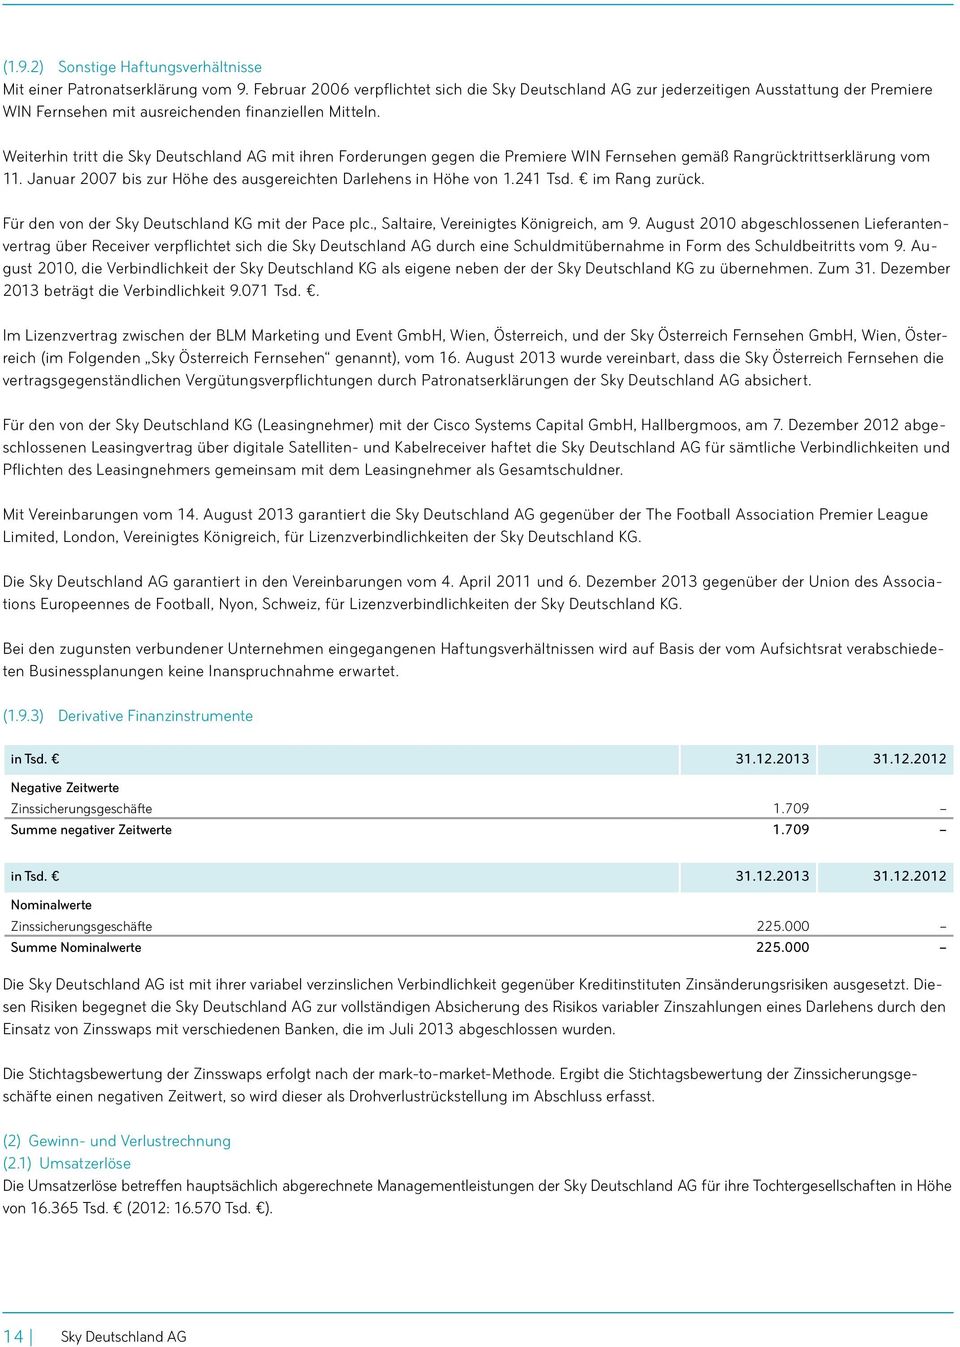 Weiterhin tritt die Sky Deutschland AG mit ihren Forderungen gegen die Premiere WIN Fernsehen gemäß Rangrücktrittserklärung vom 11. Januar 2007 bis zur Höhe des ausgereichten Darlehens in Höhe von 1.